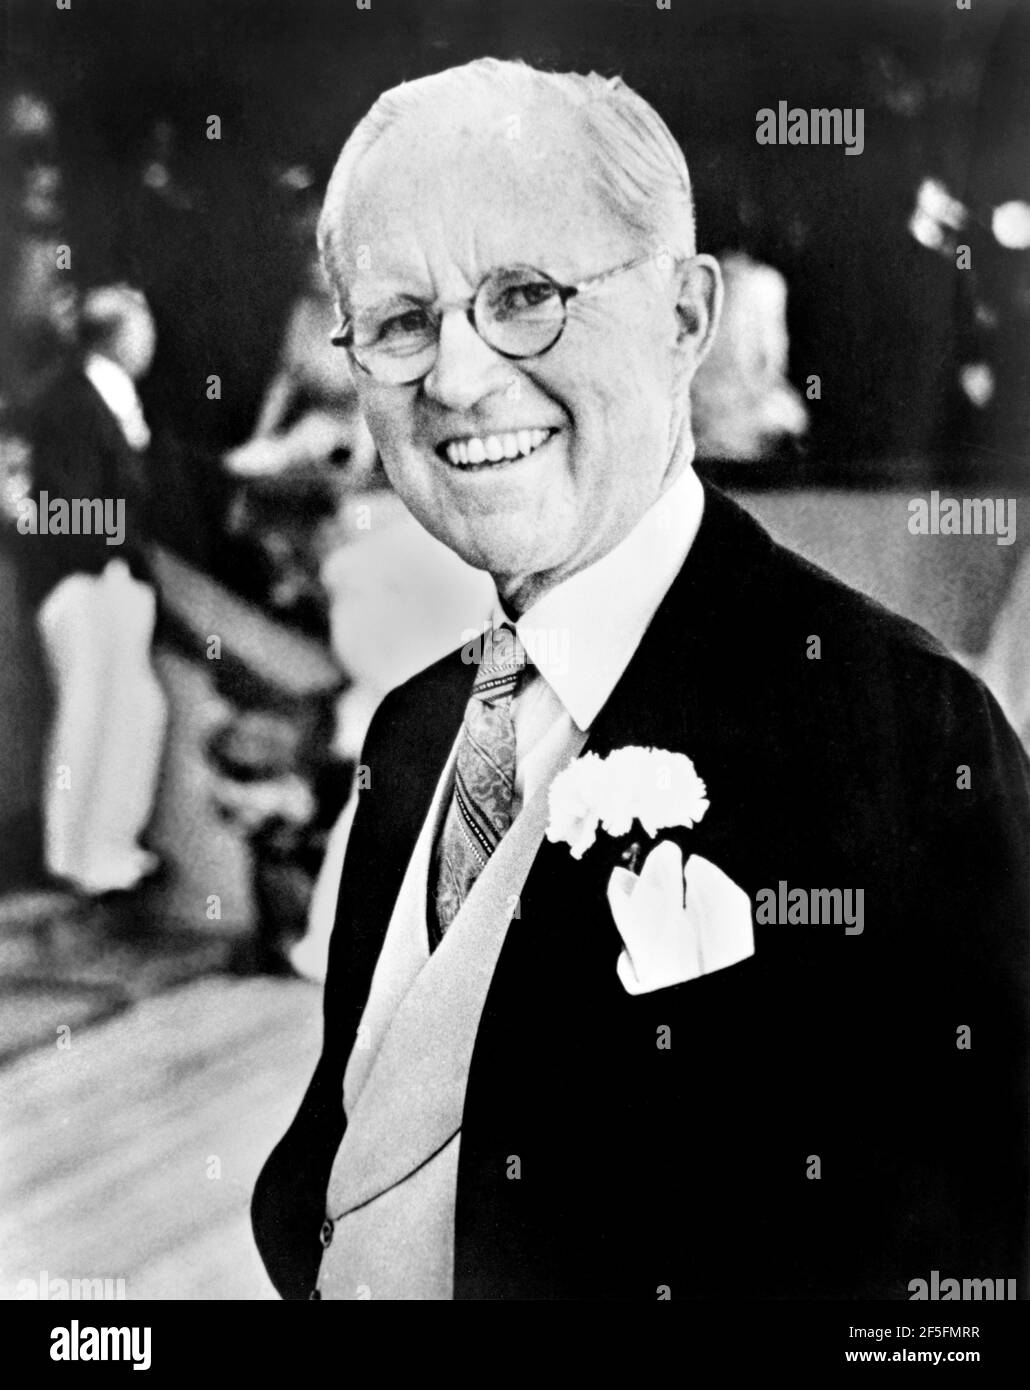 José Kennedy. Retrato del hombre de negocios y político estadounidense, Joseph Kennedy Sr. (1888-1969) por Toni Frissell, 1953 Foto de stock